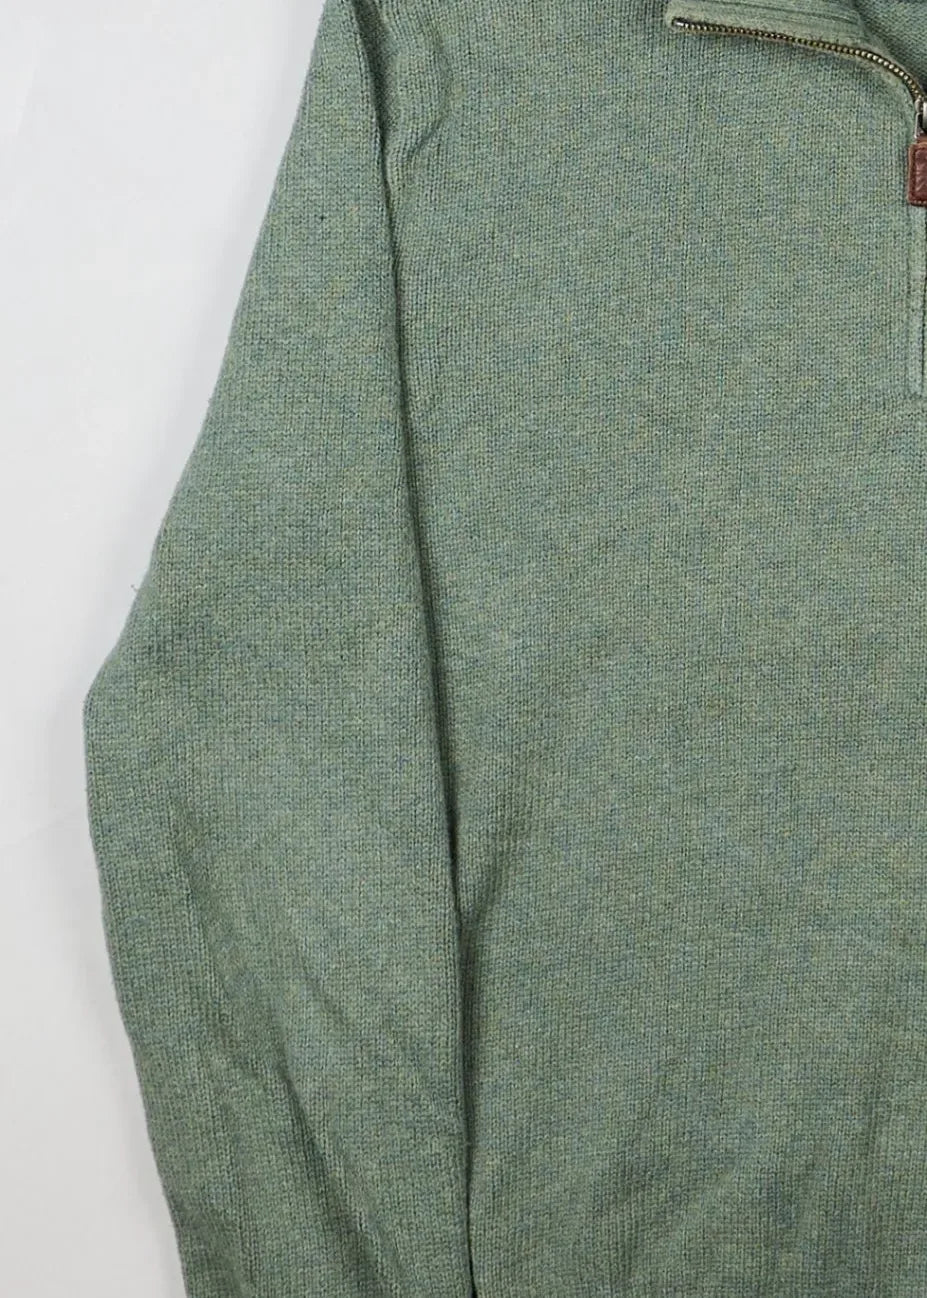 Ralph Lauren - Sweater (M) Left